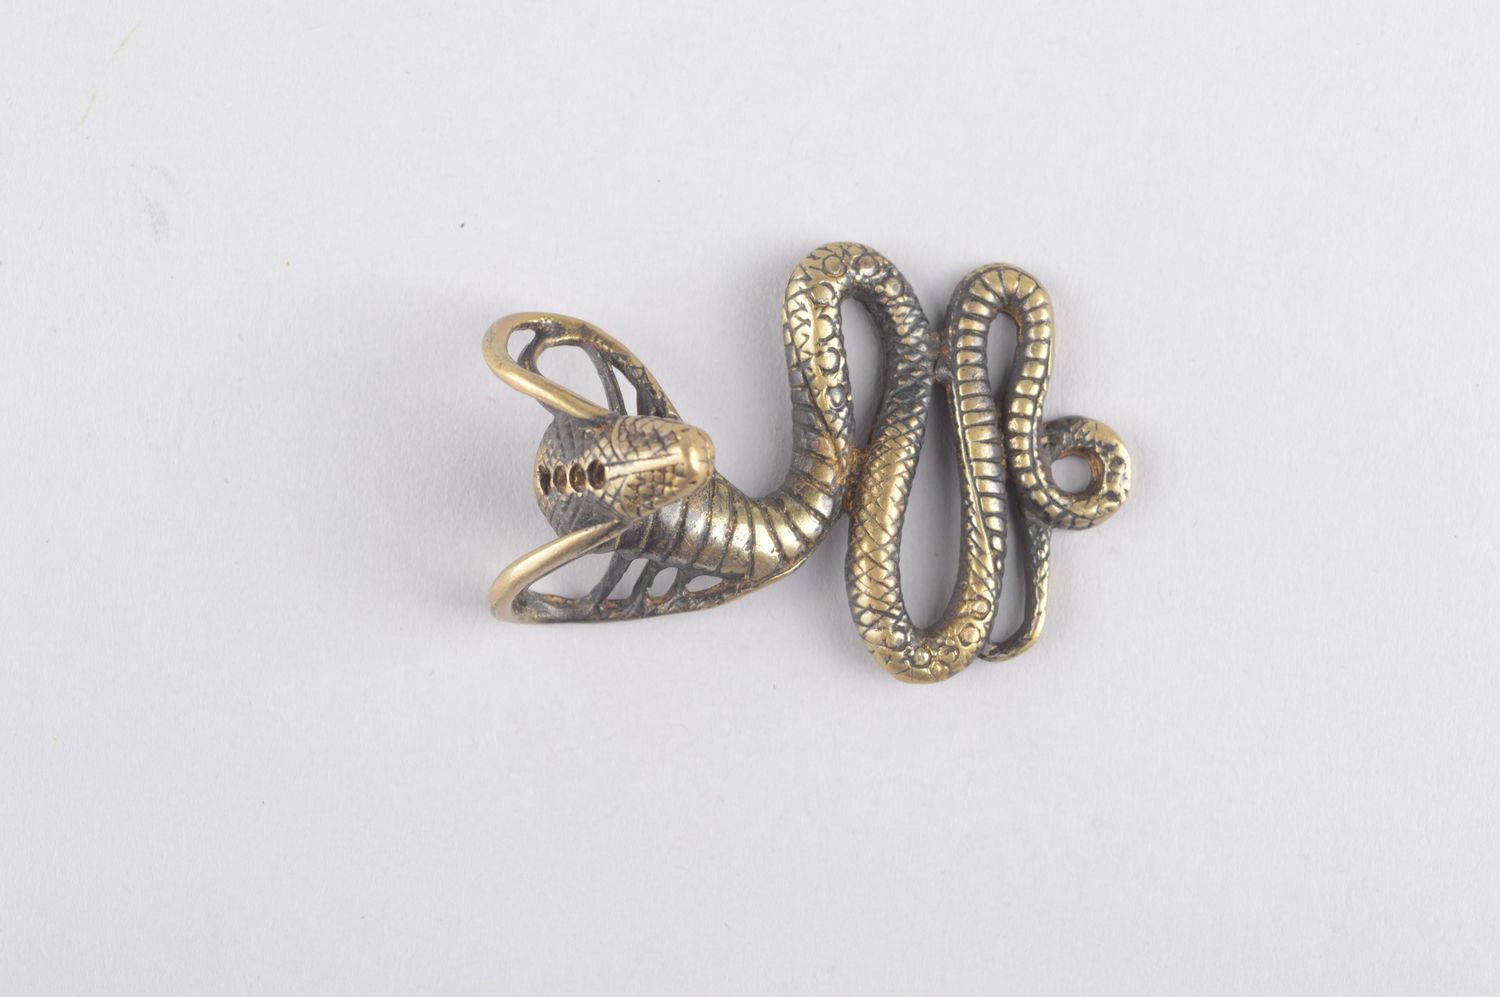 Bronze pendant handmade bronze jewelry metal pendant on cord designer jewelry photo 2